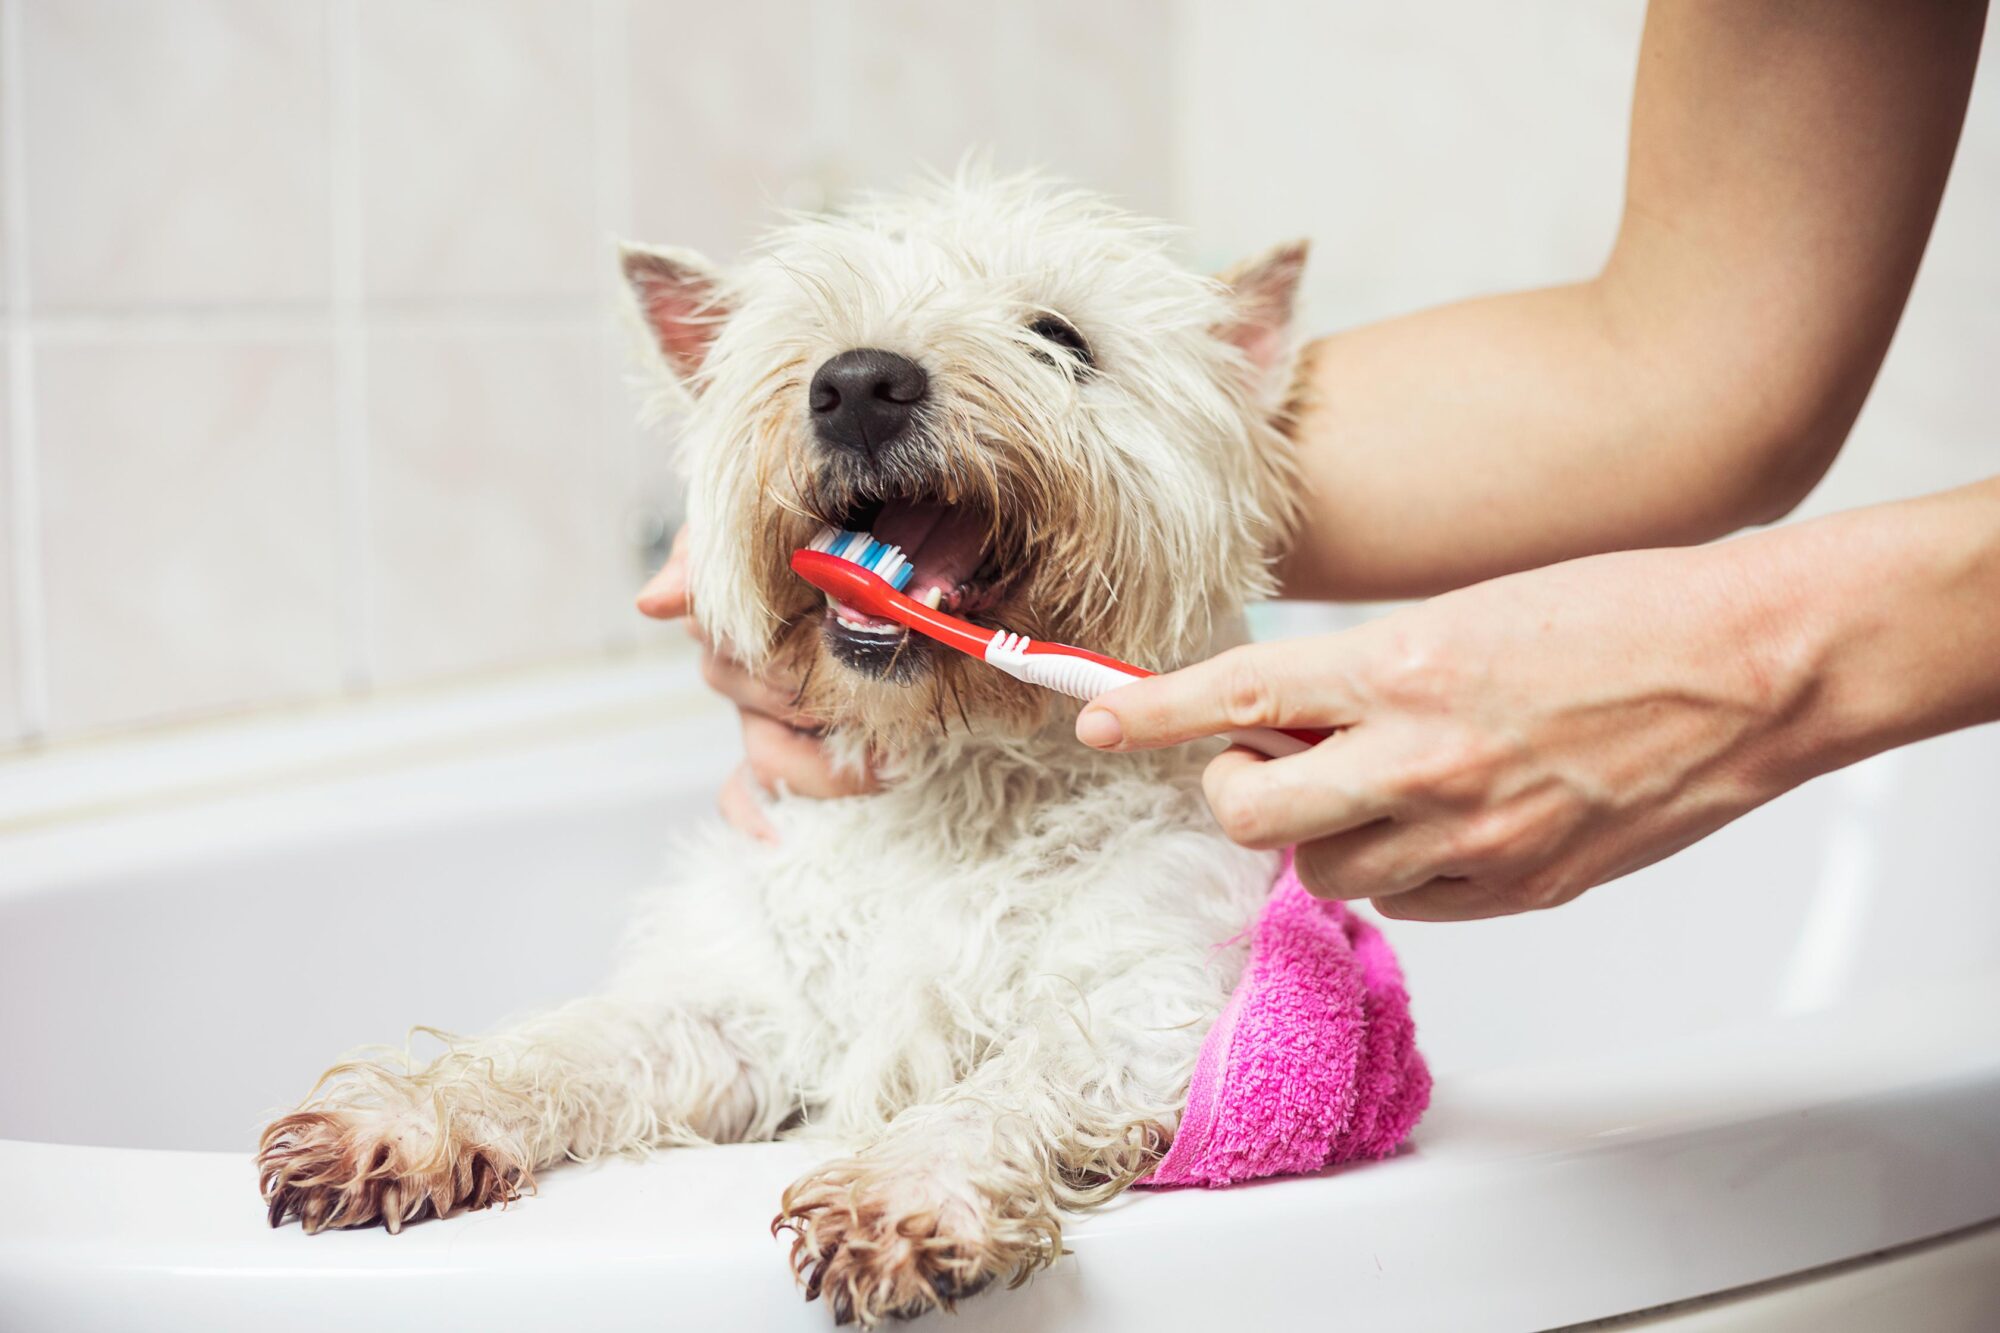 brushing dogs teeth.